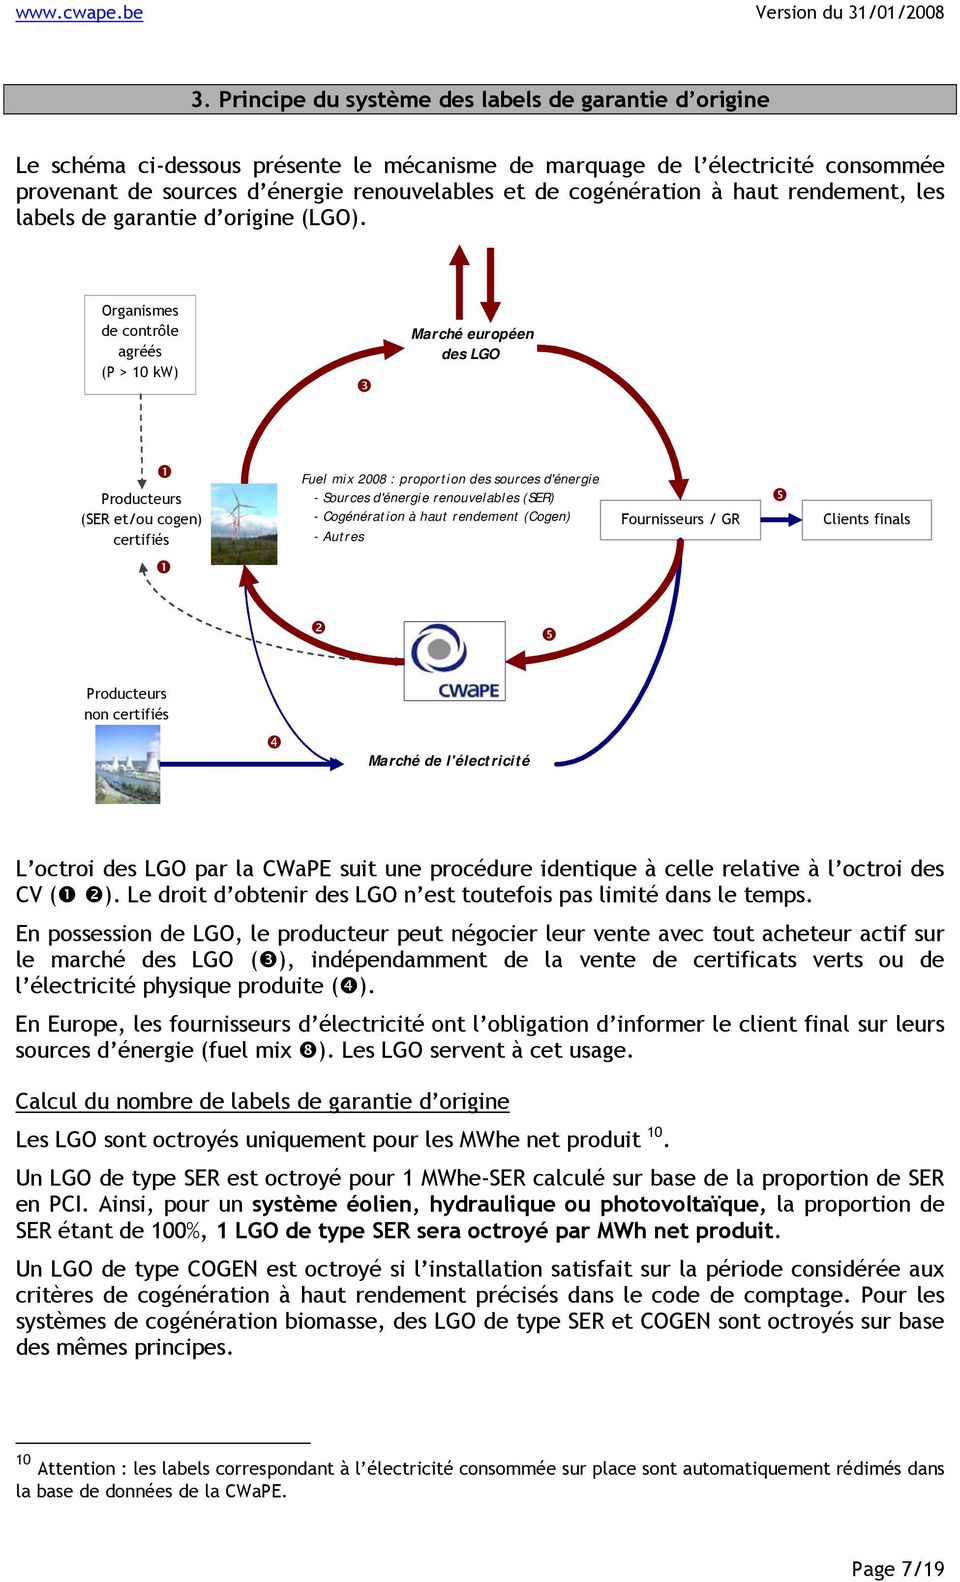 Organismes de contrôle agréés (P > 10 kw) Marché européen des LGO Producteurs (SER et/ou cogen) certifiés Fuel mix 2008 : proportion des sources d'énergie - Sources d'énergie renouvelables (SER) -